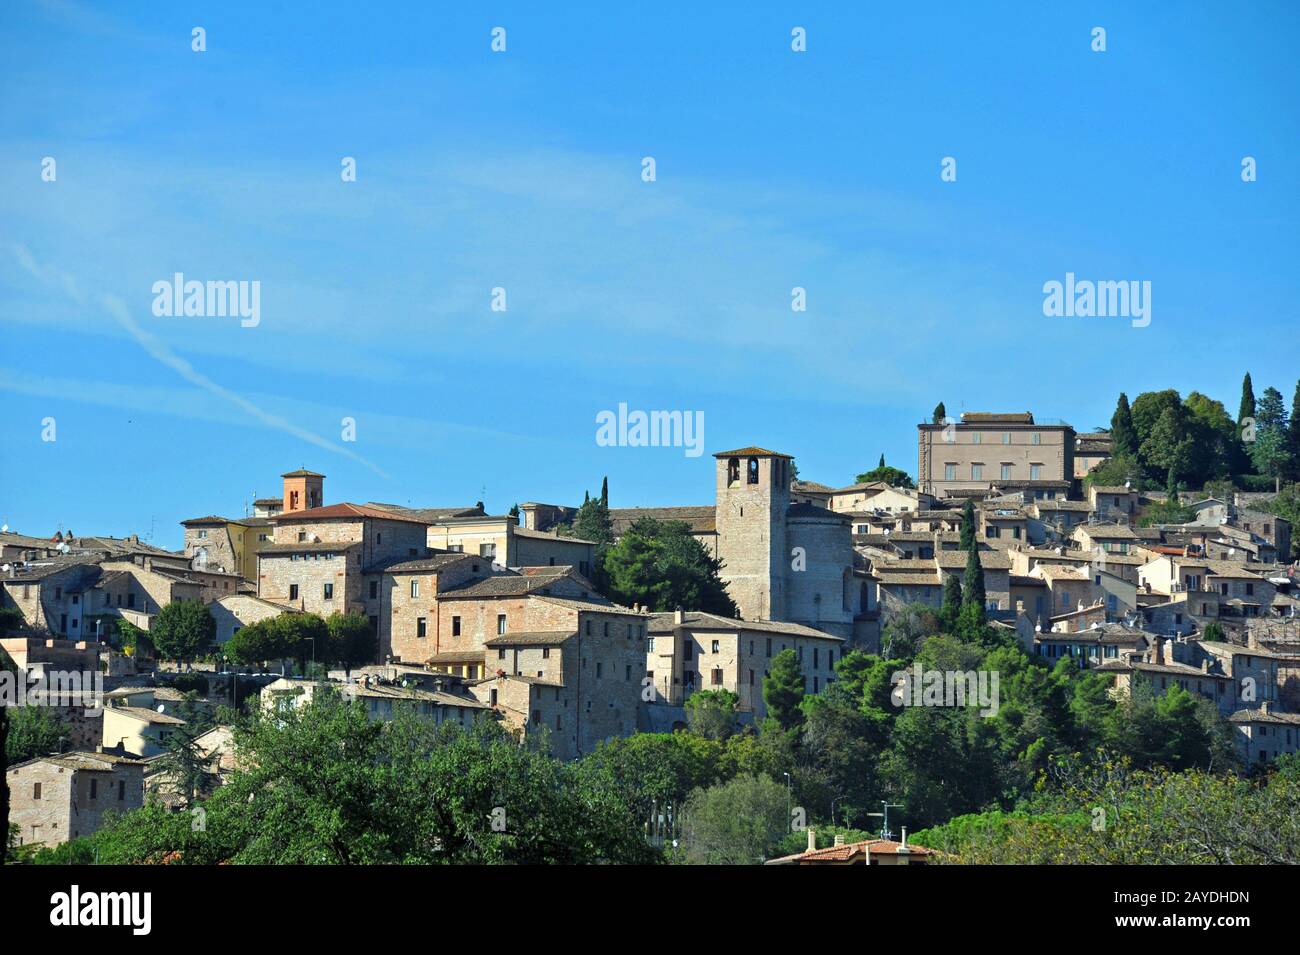 Spello in Italy Stock Photo - Alamy